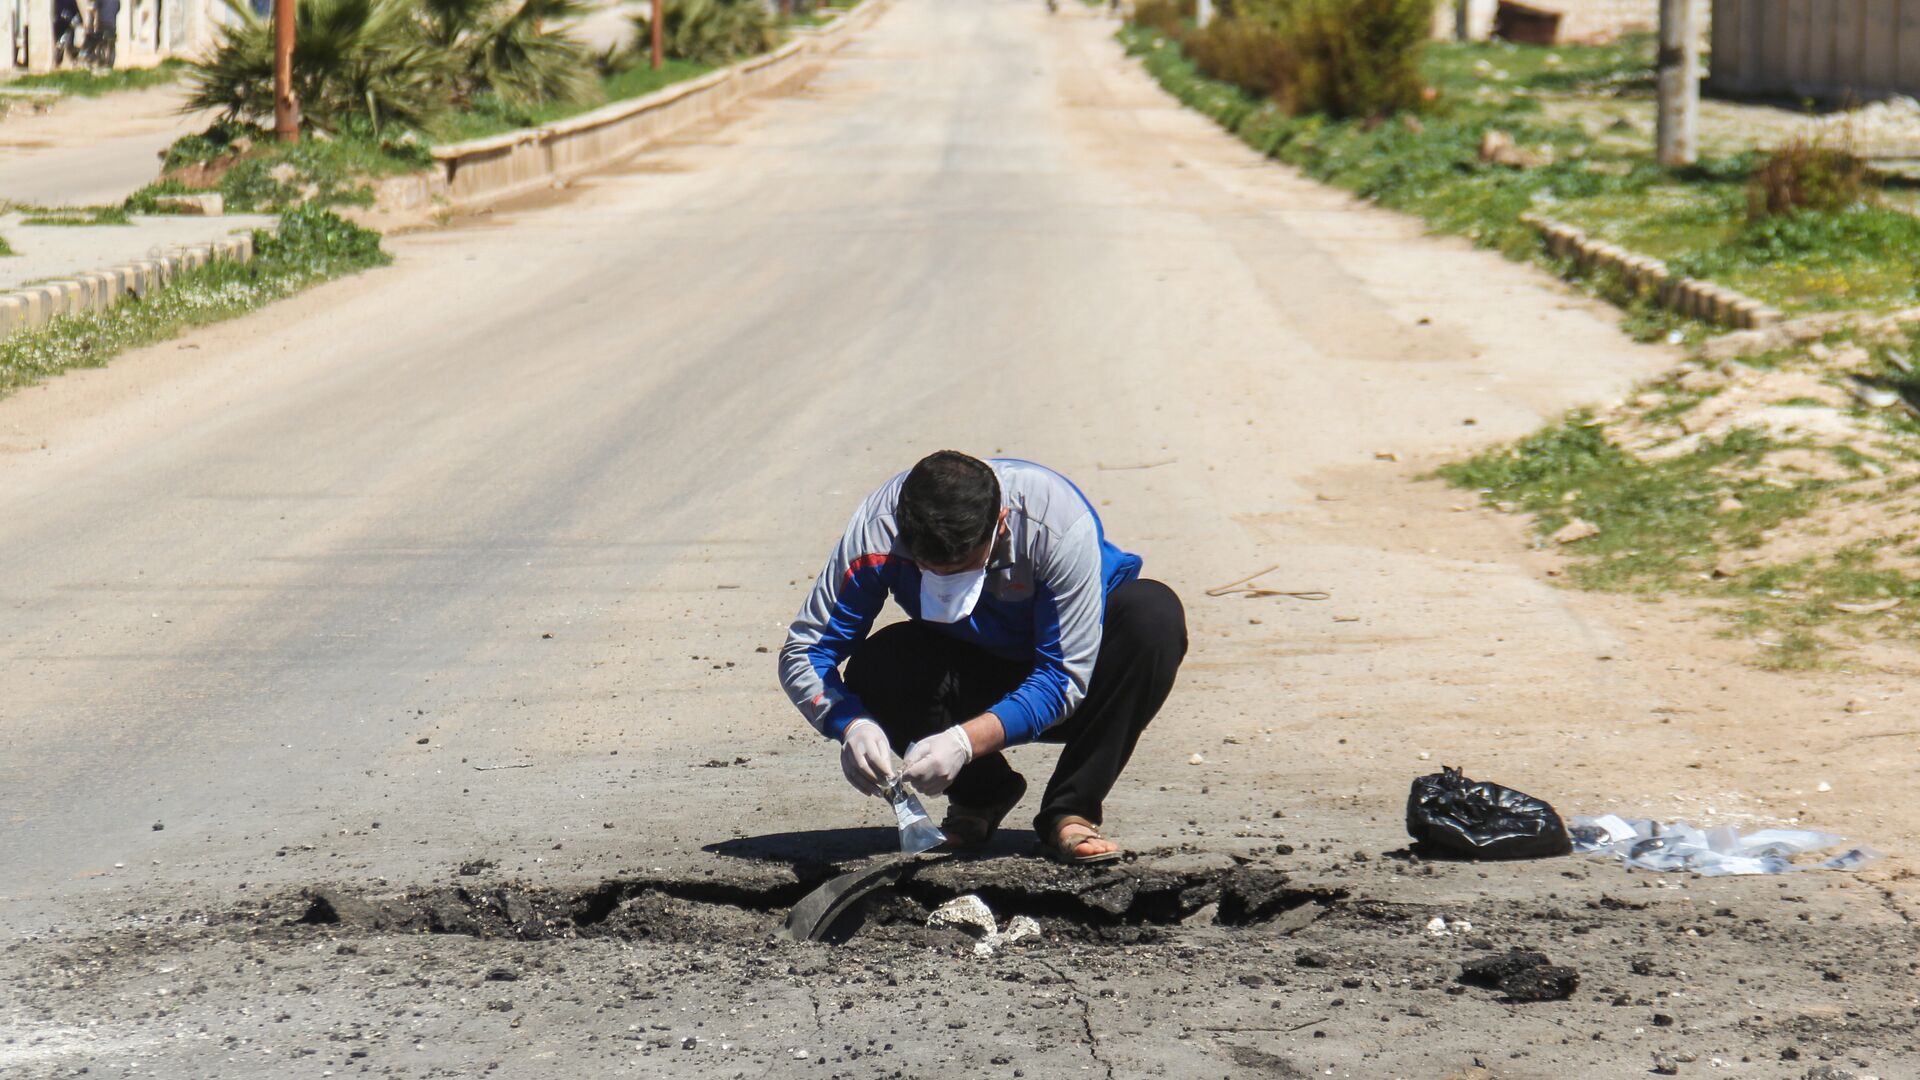 Сбор образцов почвы после химической атаки в городе Хан-Шейхун, Сирия. 5 апреля 2017 года - ИноСМИ, 1920, 27.04.2017